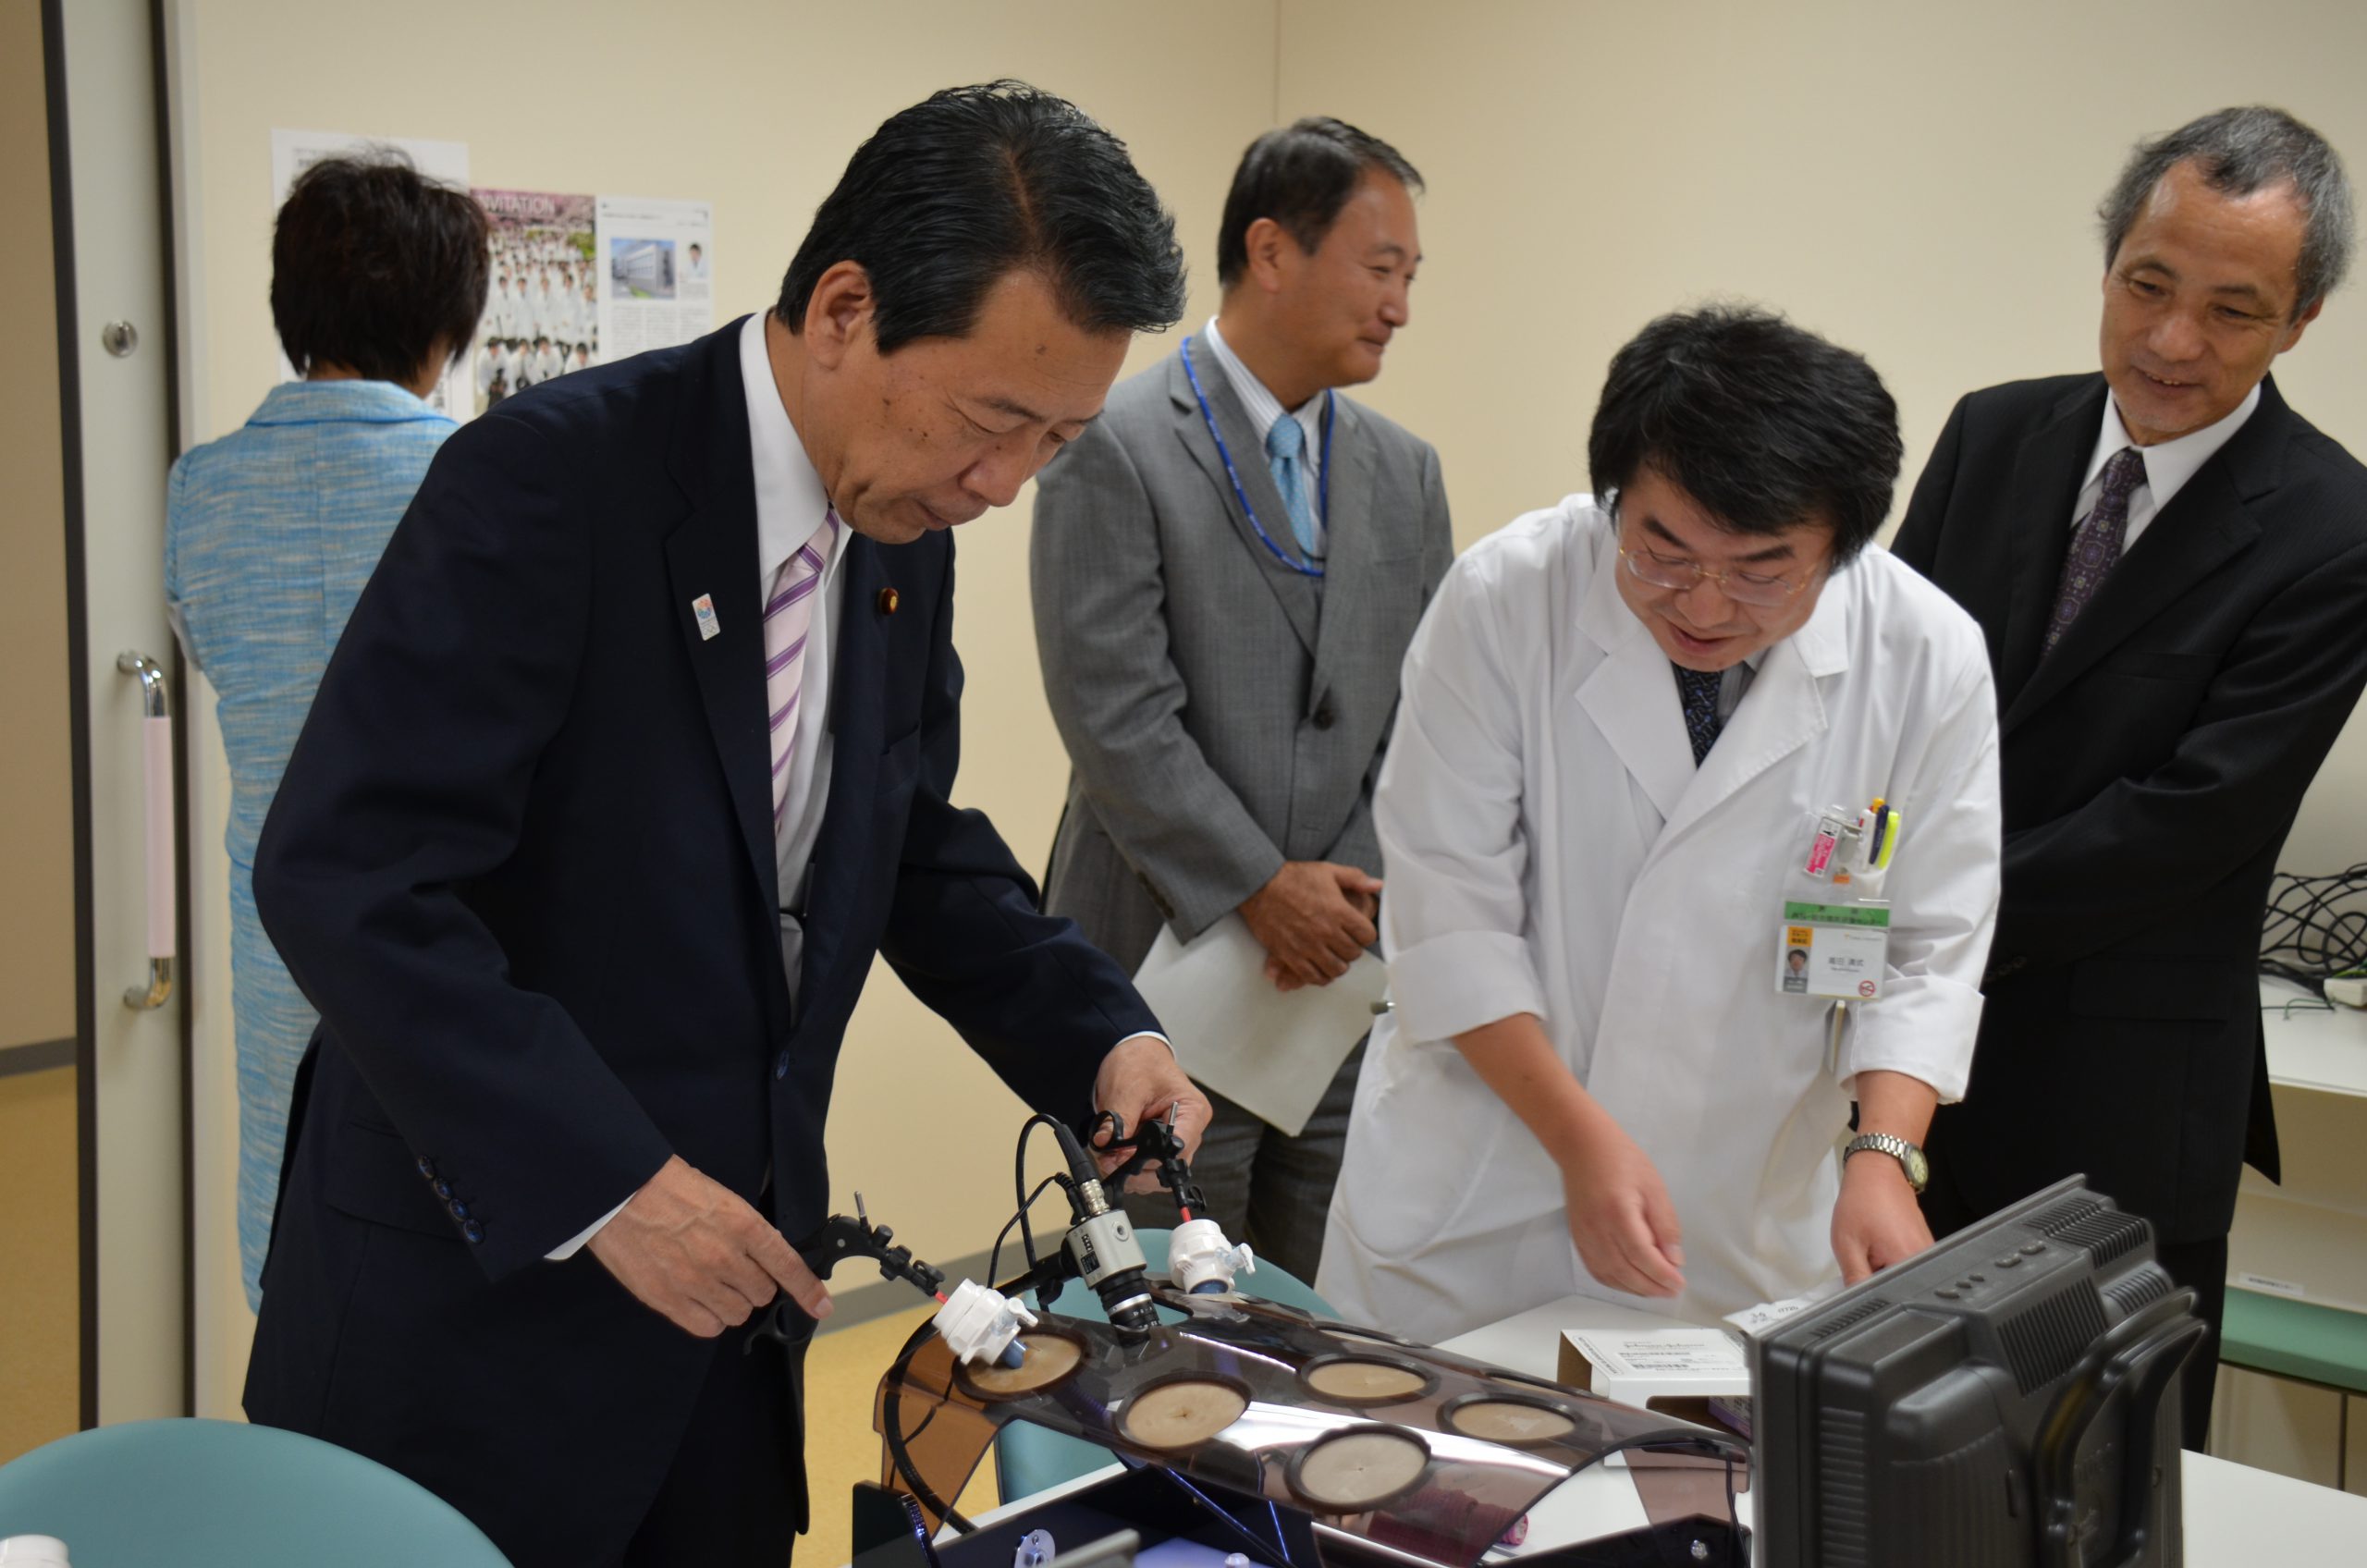 平野博文文部科学大臣らが本学のプロテオ医学研究センターなどを視察しました【9月10日(月)】